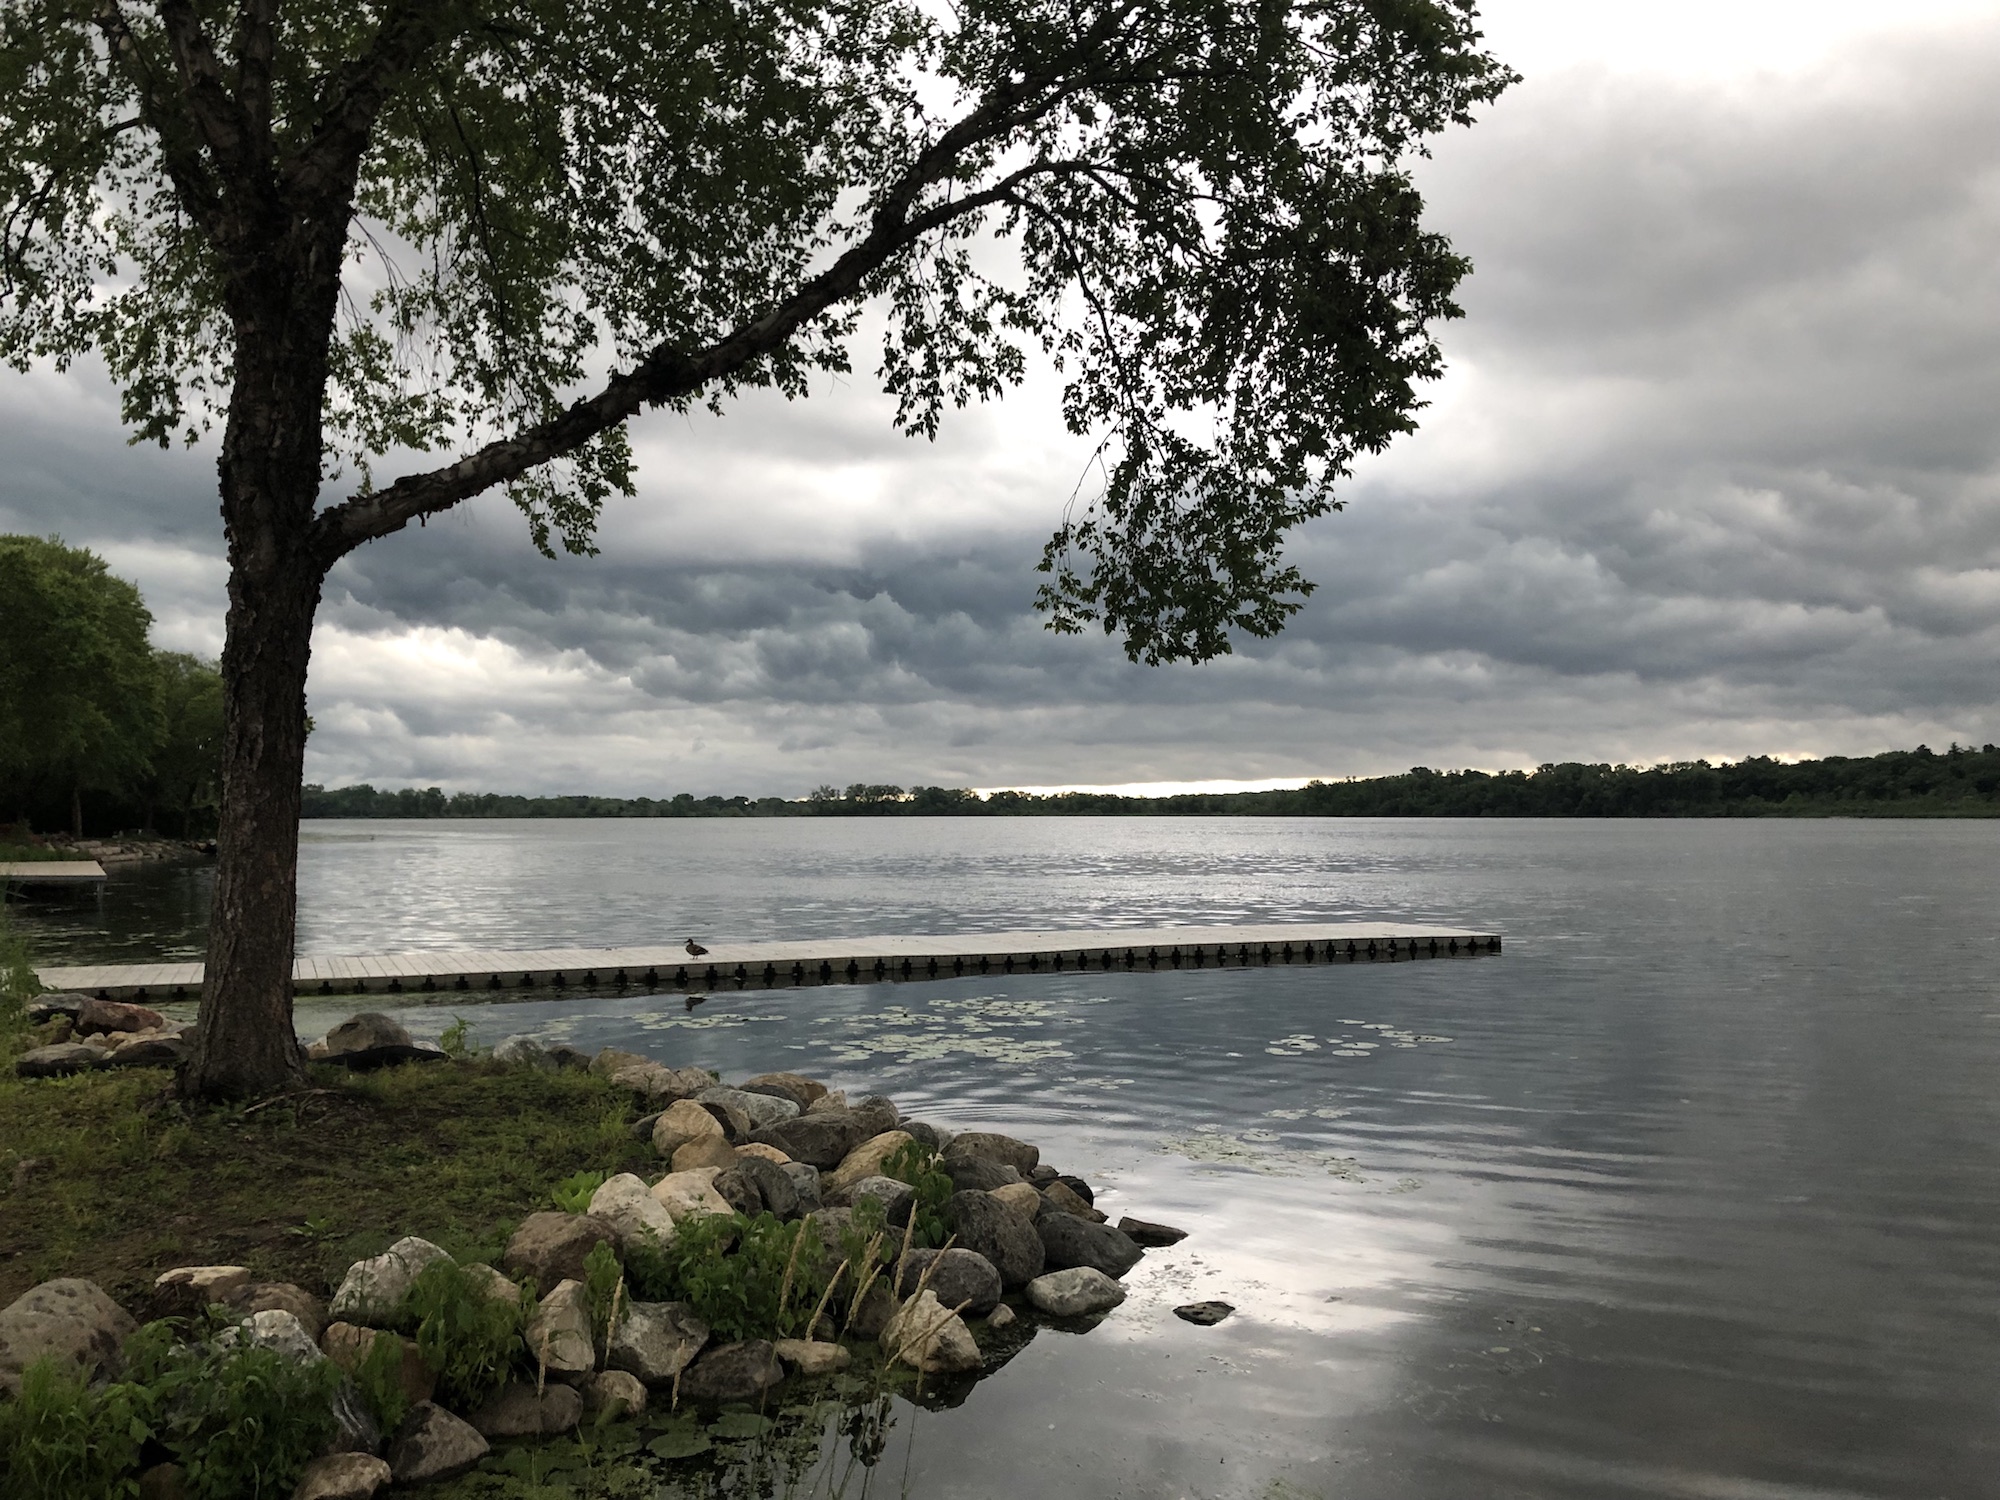 Lake Wingra on June 28, 2019.